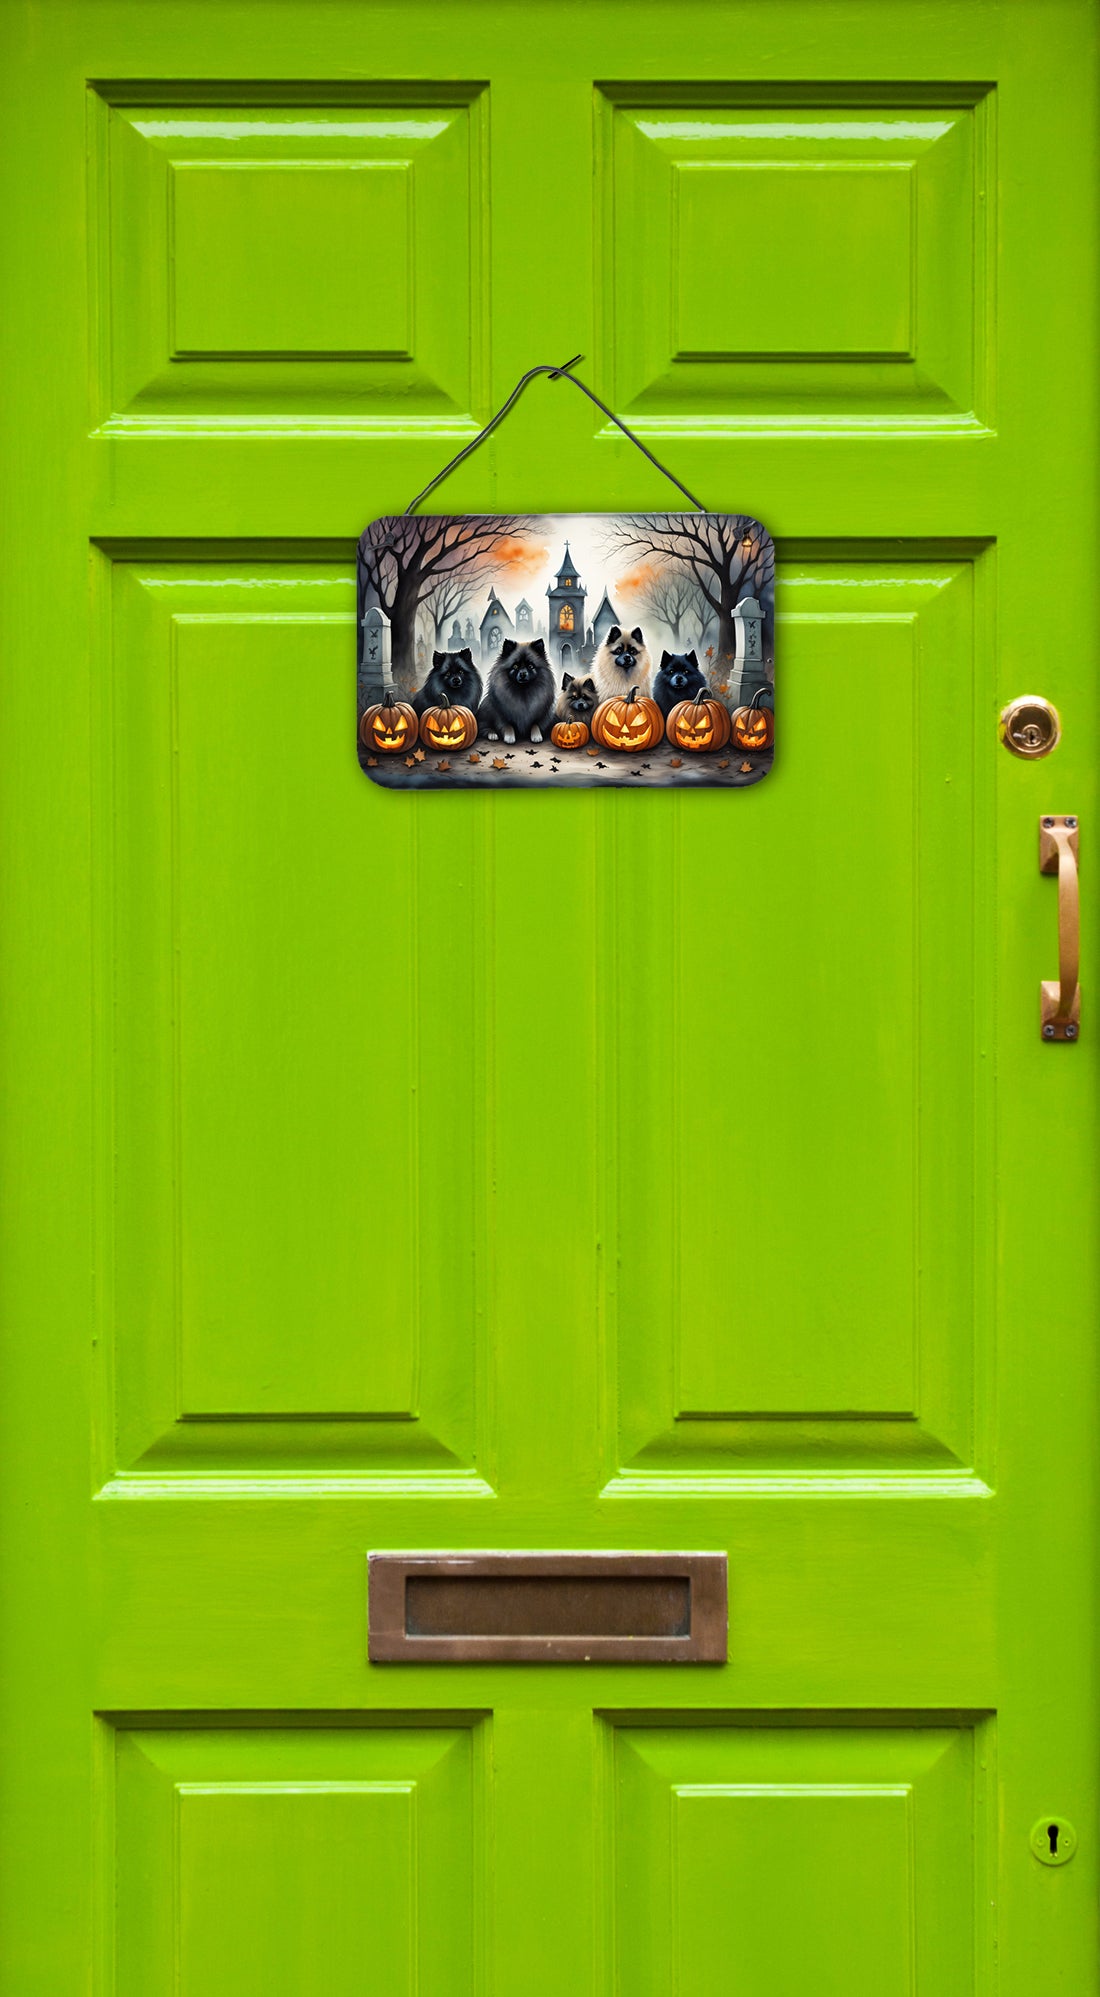 Buy this Keeshond Spooky Halloween Wall or Door Hanging Prints